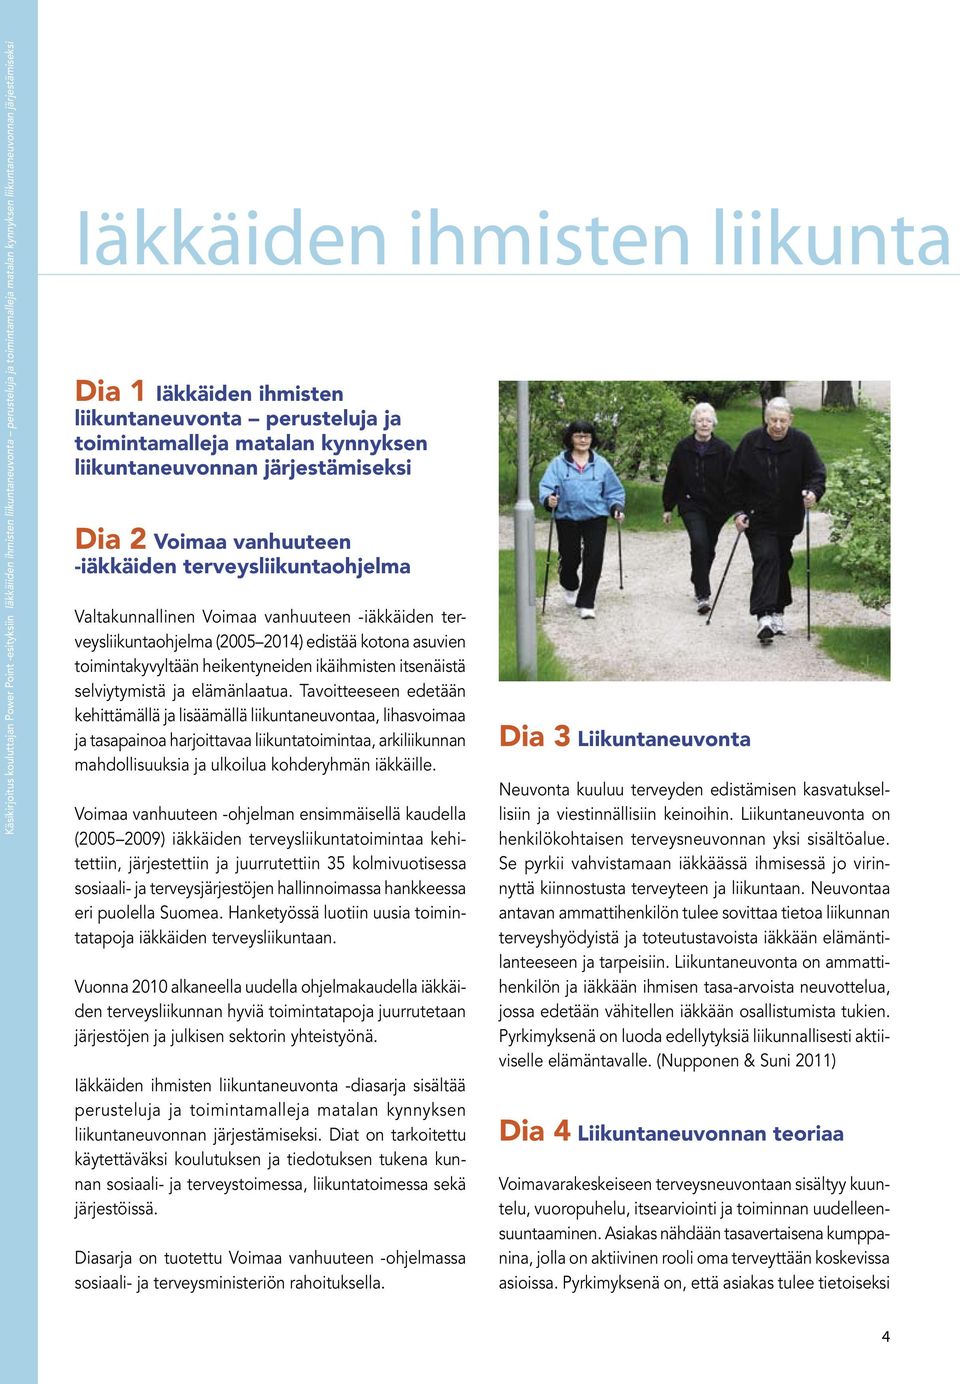 Voimaa vanhuuteen -iäkkäiden terveysliikuntaohjelma (2005 2014) edistää kotona asuvien toimintakyvyltään heikentyneiden ikäihmisten itsenäistä selviytymistä ja elämänlaatua.